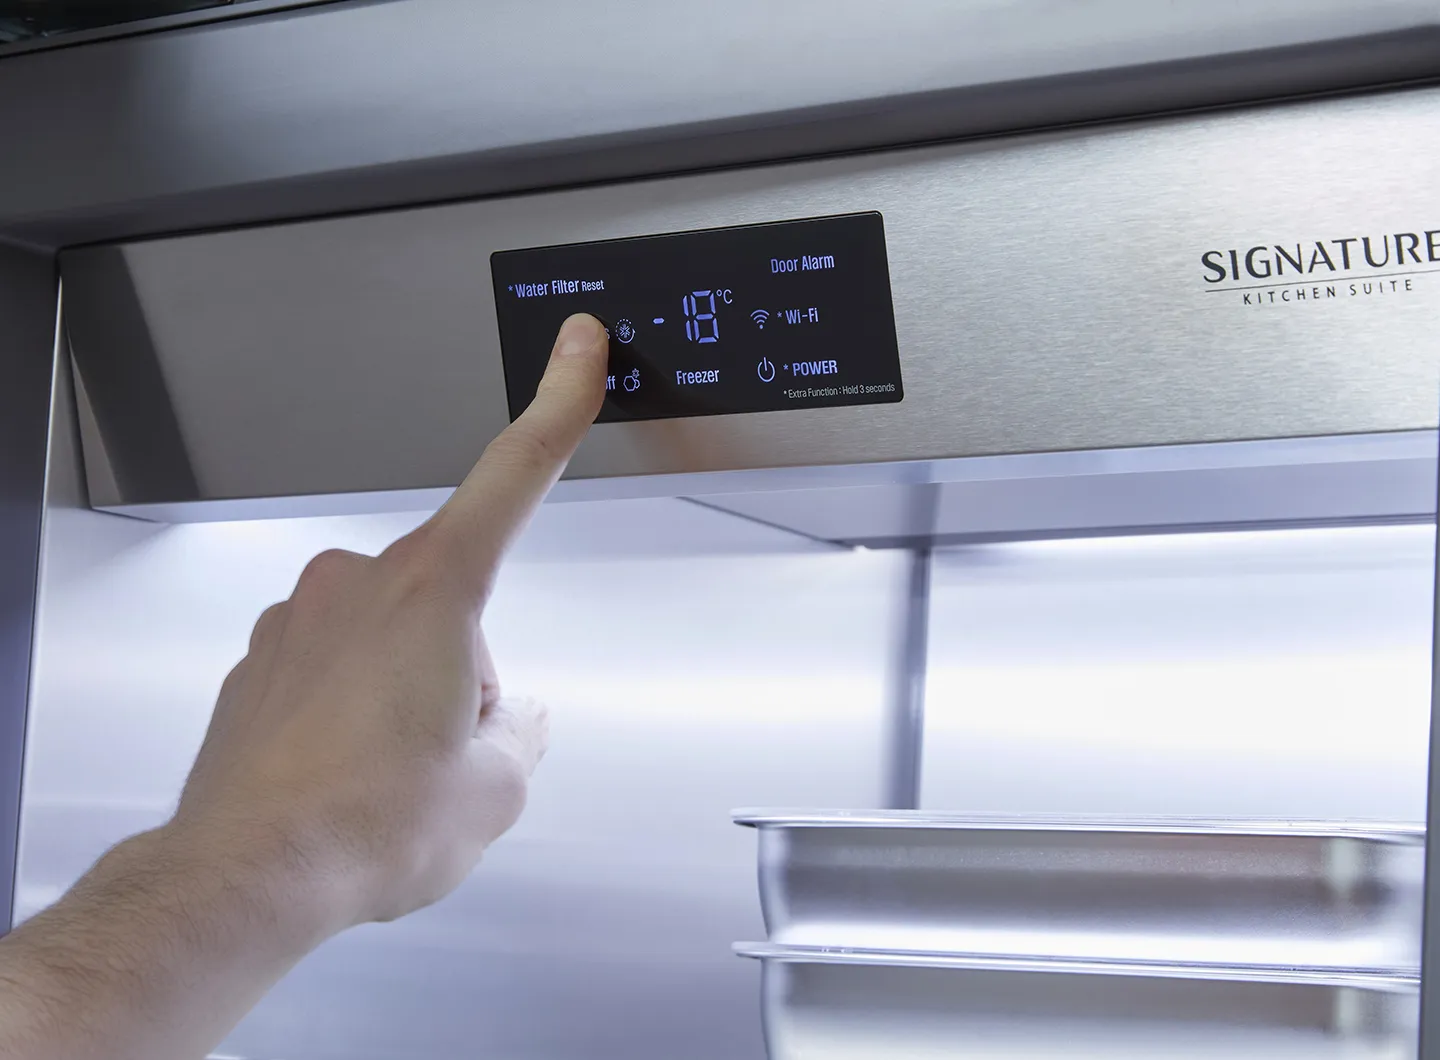 24” Integrated refrigerator